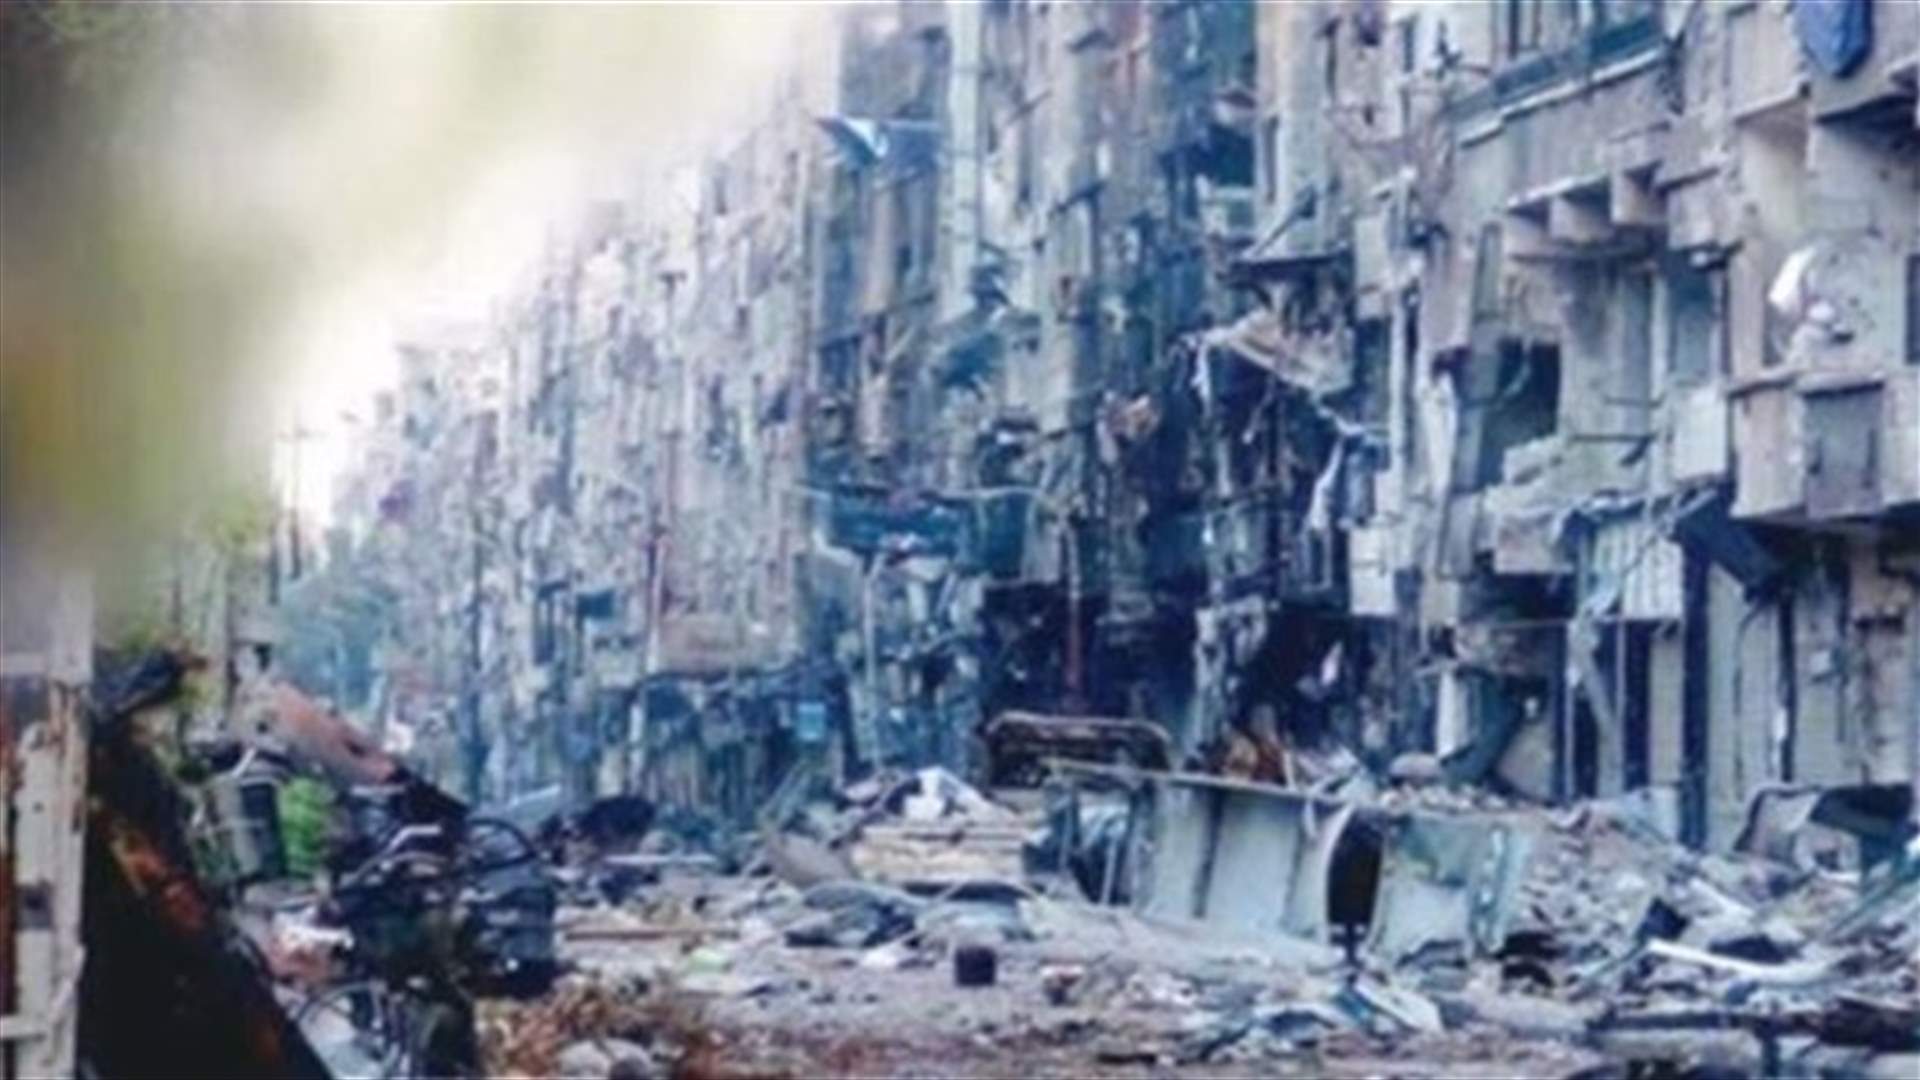 هيومان رايتس ووتش:قوات النظام صعدت القصف بالبراميل المتفجرة منذ شباط 